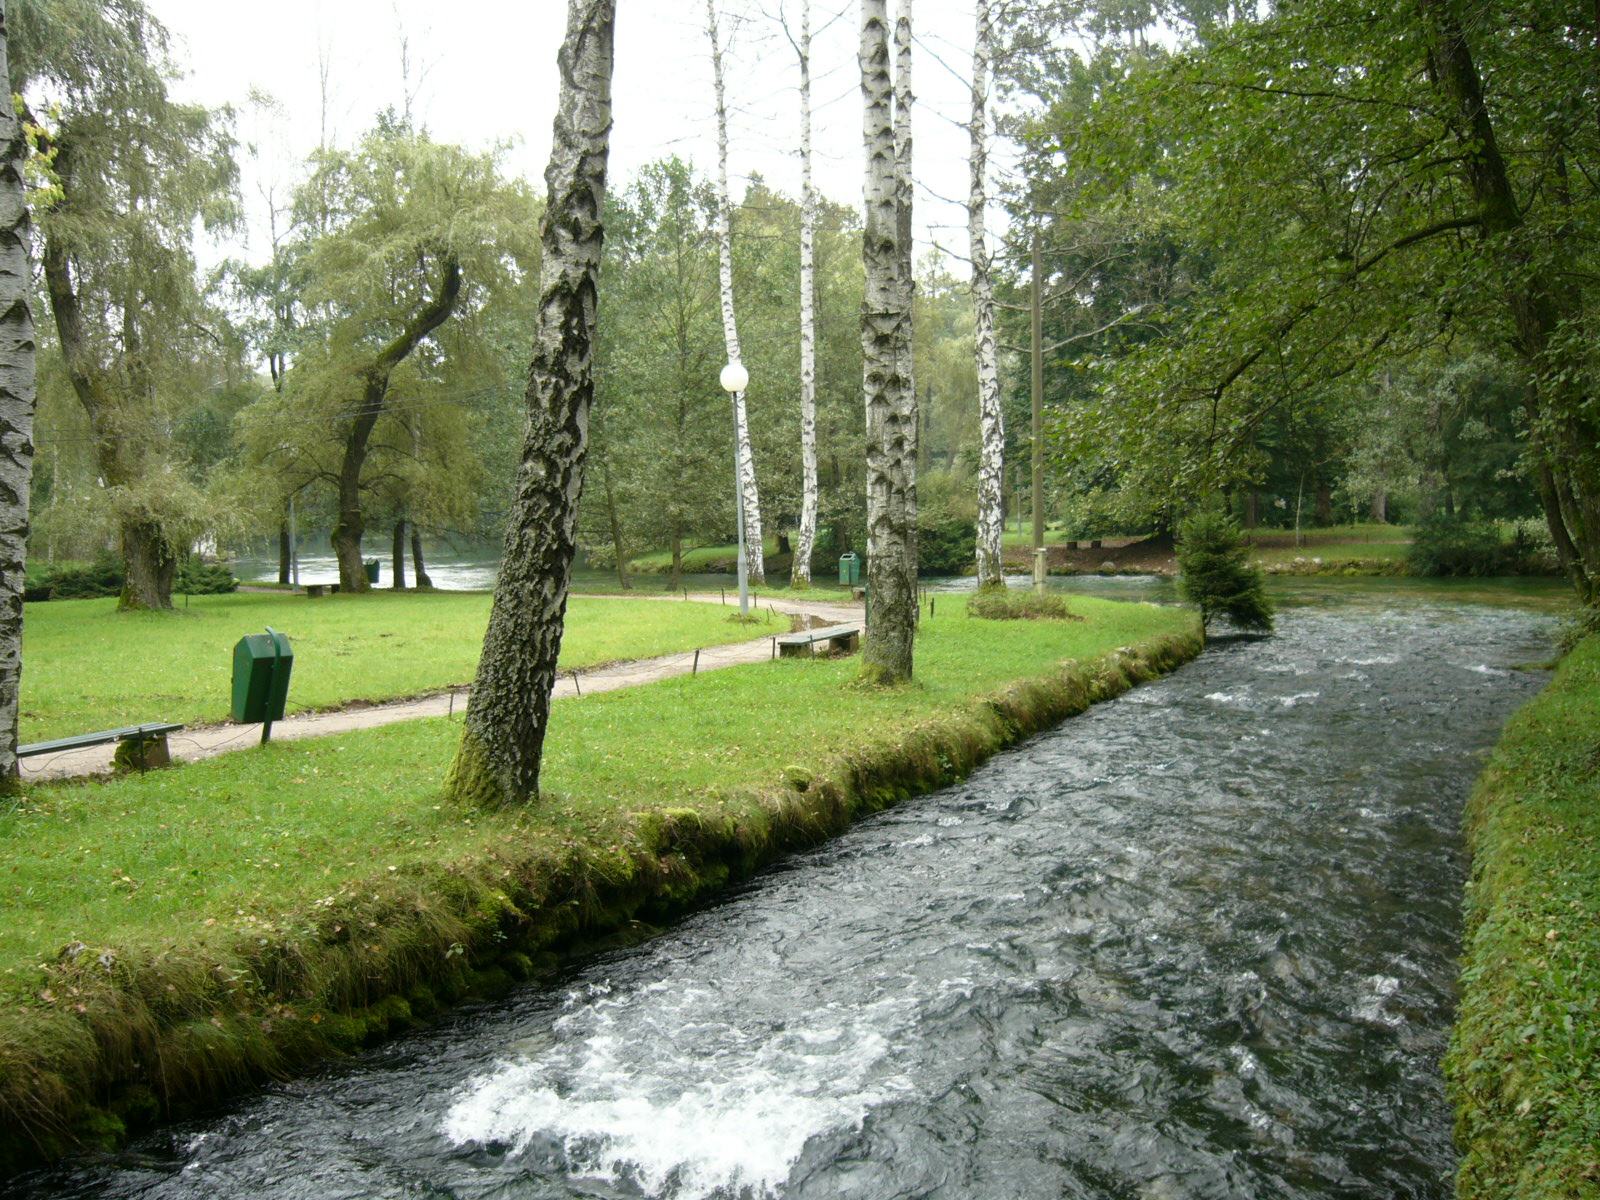 File:River Bosna at Vrelo Bosne Park in Sarajevo.JPG - Wikimedia Commons